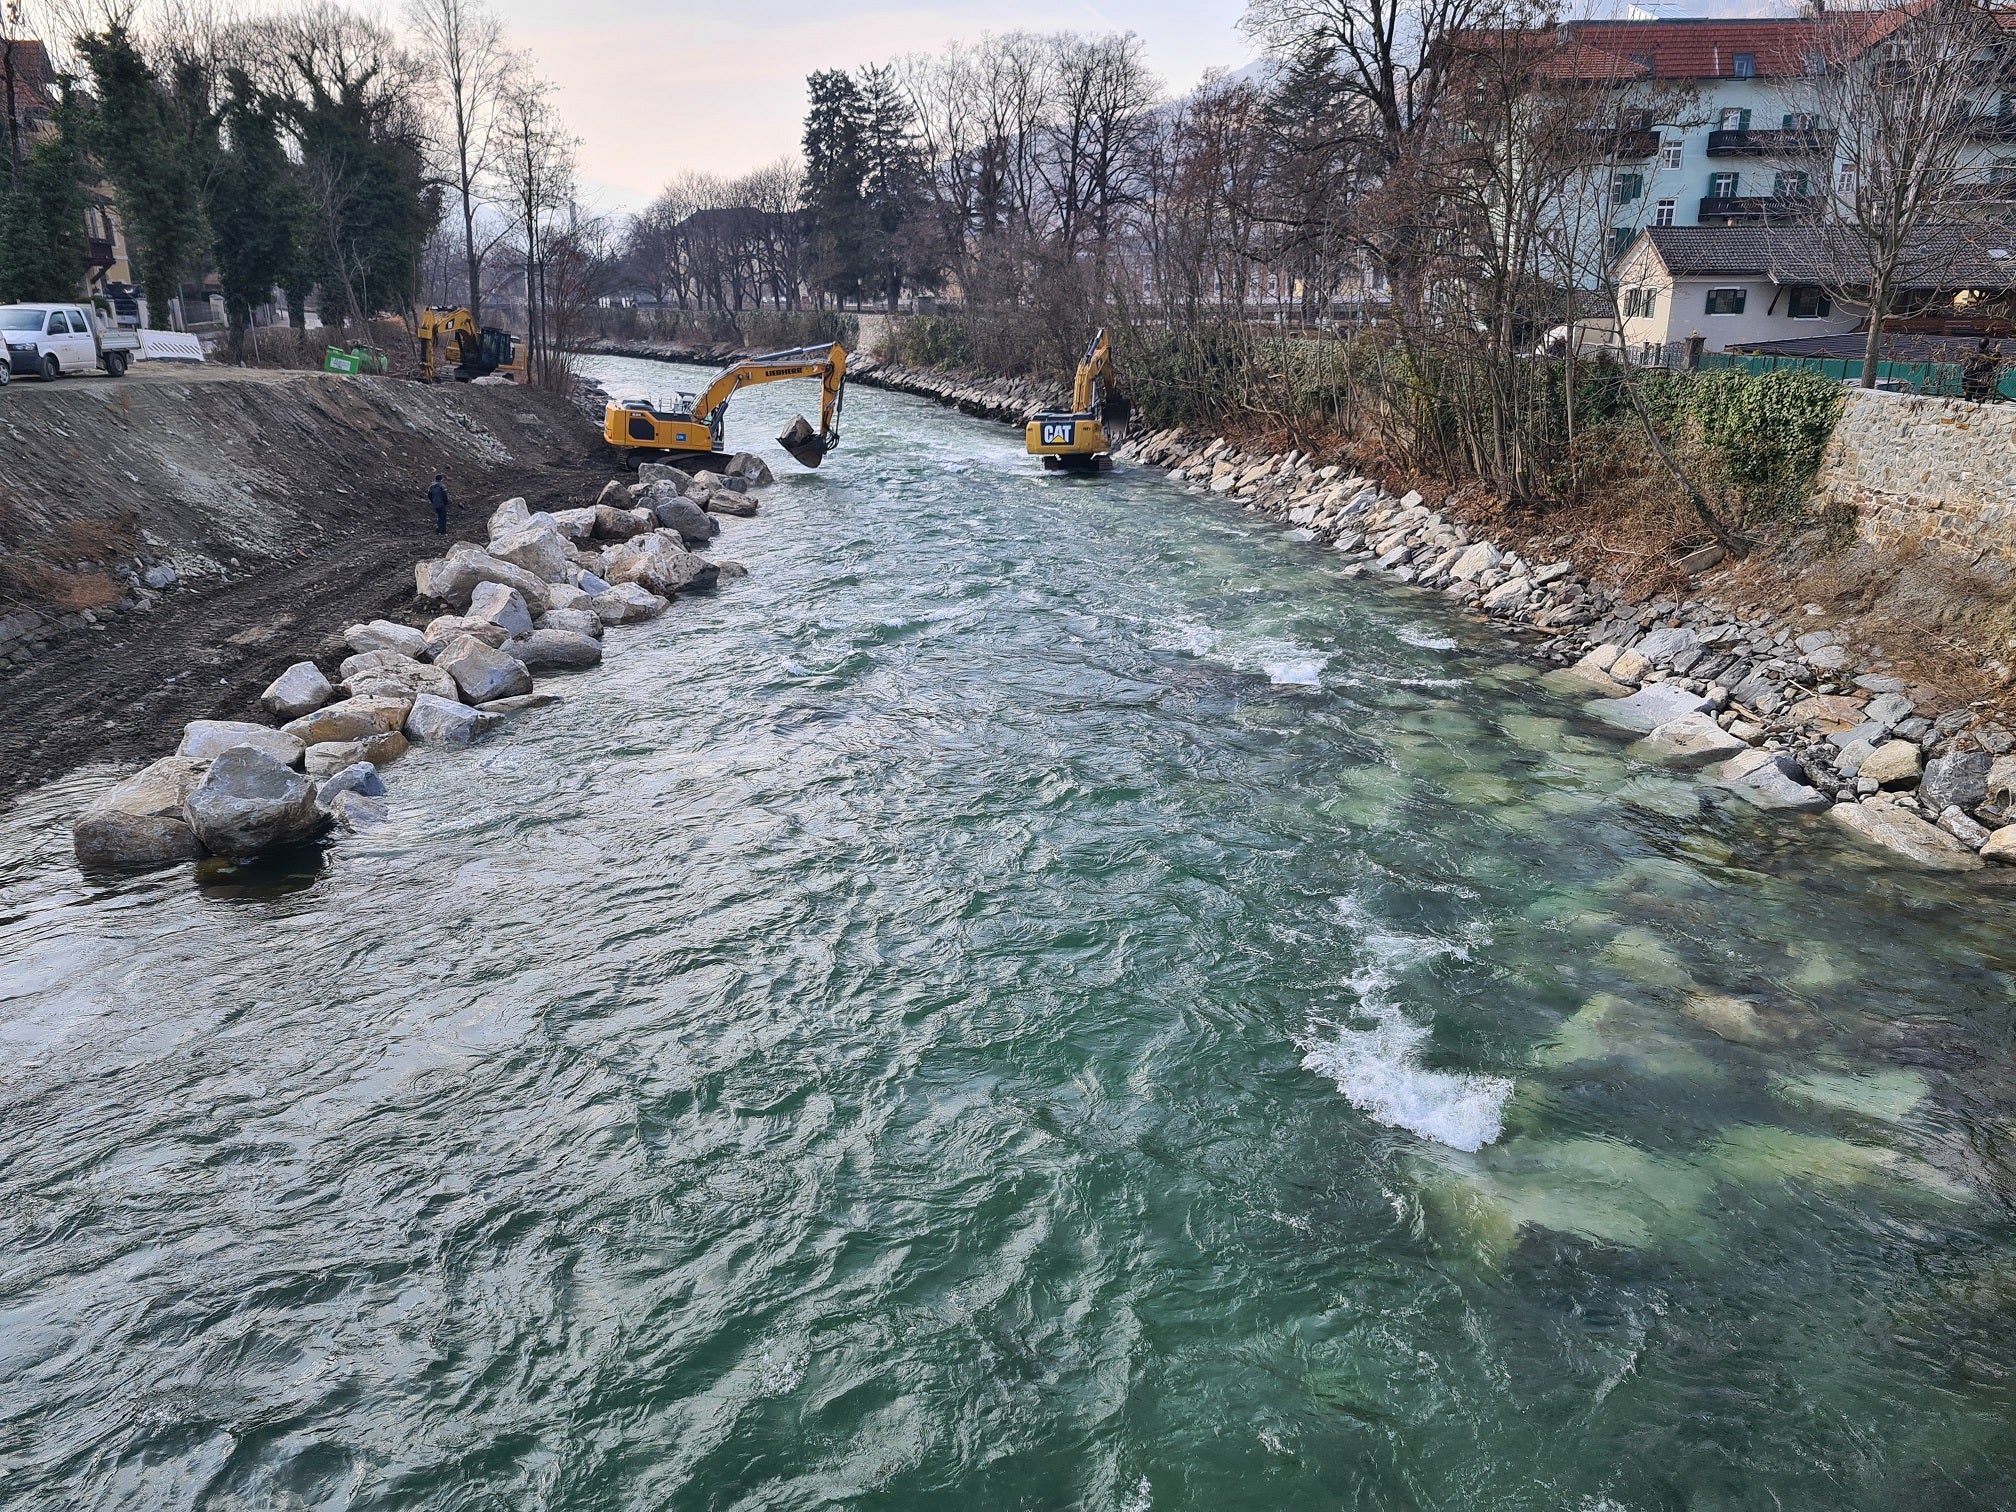 Wildbachverbauung verstärkt Hochwasserschutz an der Rienz in Brixen, Alle  News, News